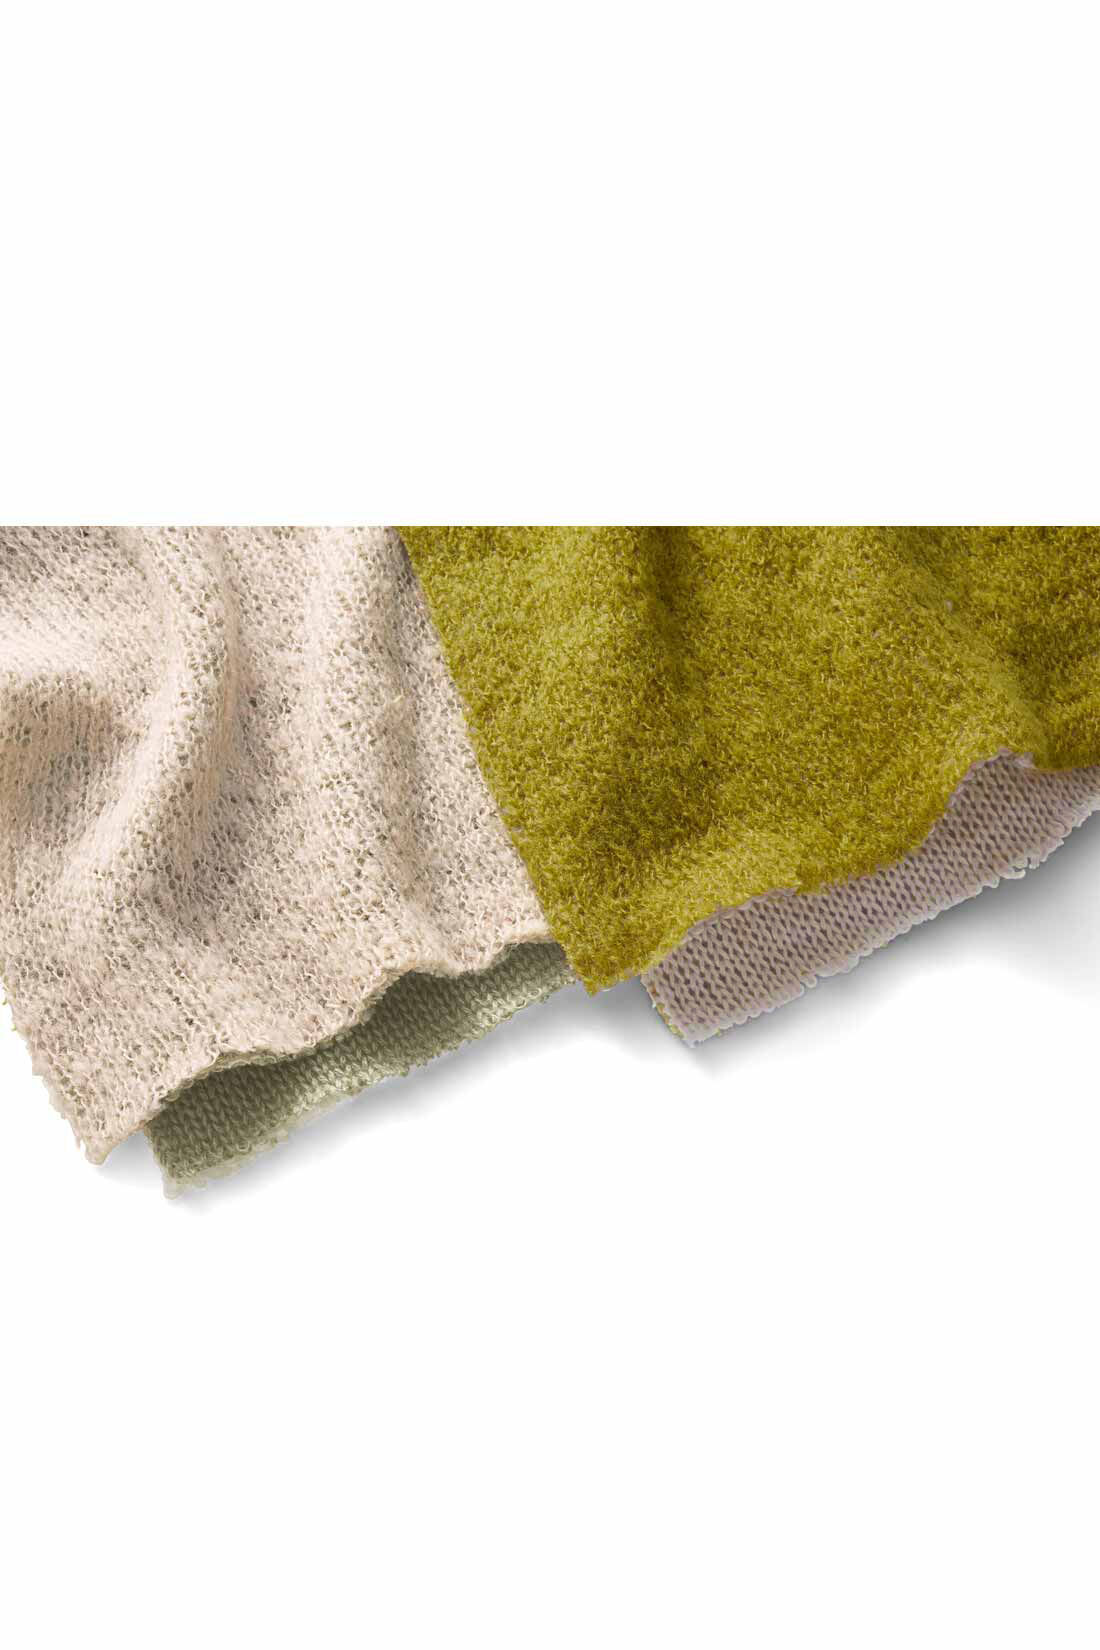 MEDE19F|MEDE19F　ダブルフェイスタートルニット〈キミドリ〉|表側は毛足のある糸を使った、透け感のある甘編みニット。裏側は肌当たりのいい天じく編み素材。二重仕立てにしているため、編み地が風を通しにくく、暖かく着られます。